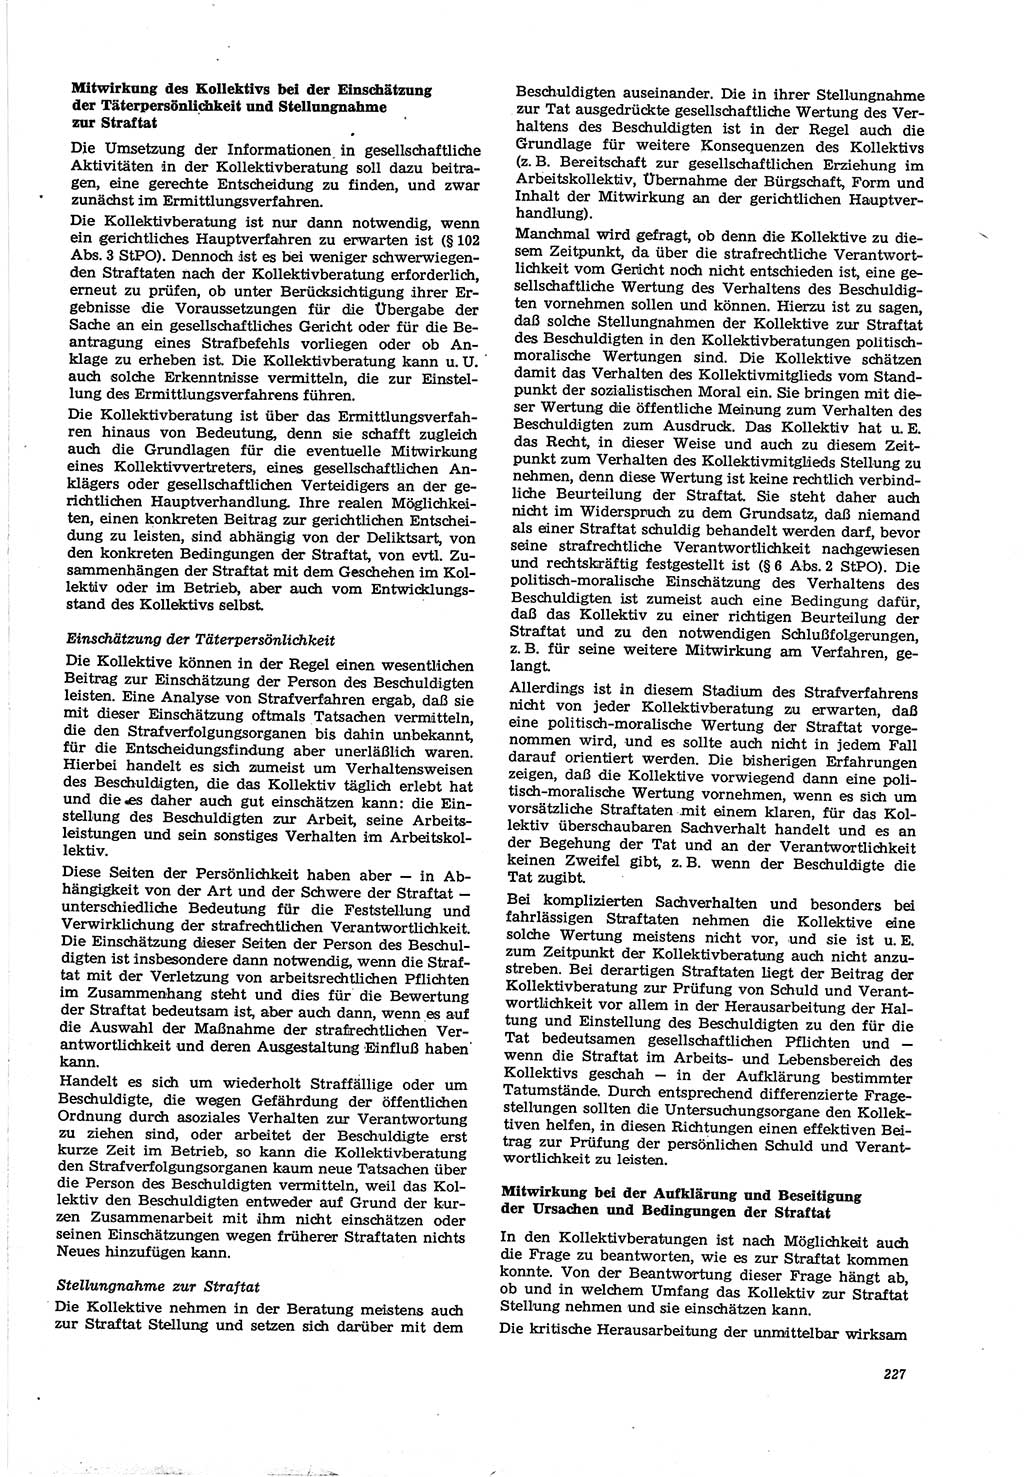 Neue Justiz (NJ), Zeitschrift für Recht und Rechtswissenschaft [Deutsche Demokratische Republik (DDR)], 30. Jahrgang 1976, Seite 227 (NJ DDR 1976, S. 227)